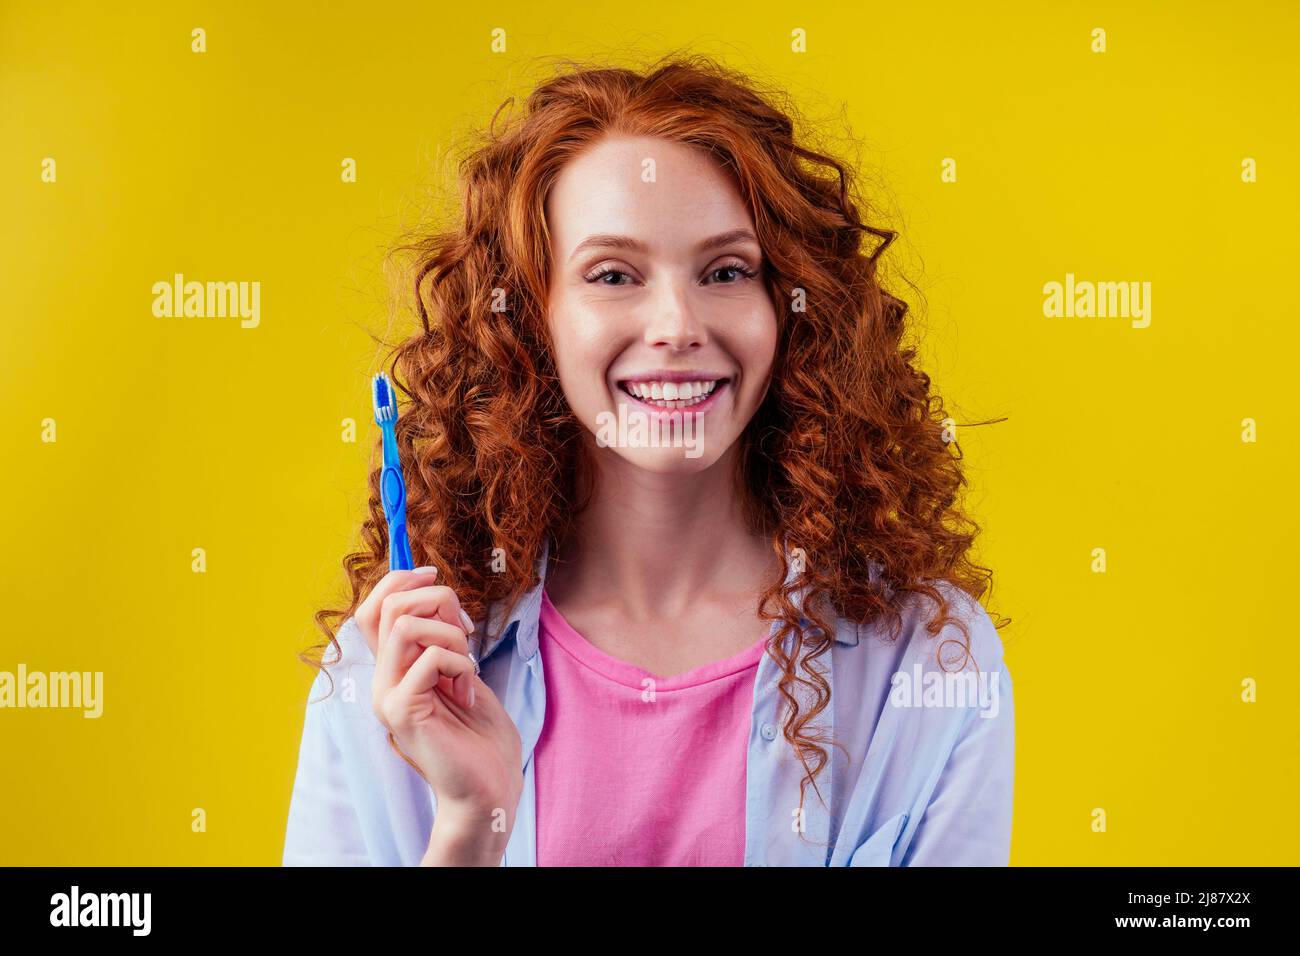 femme gingembre rougeâtre avec brosse à dents écologique et dentifrice sur fond jaune studio Banque D'Images